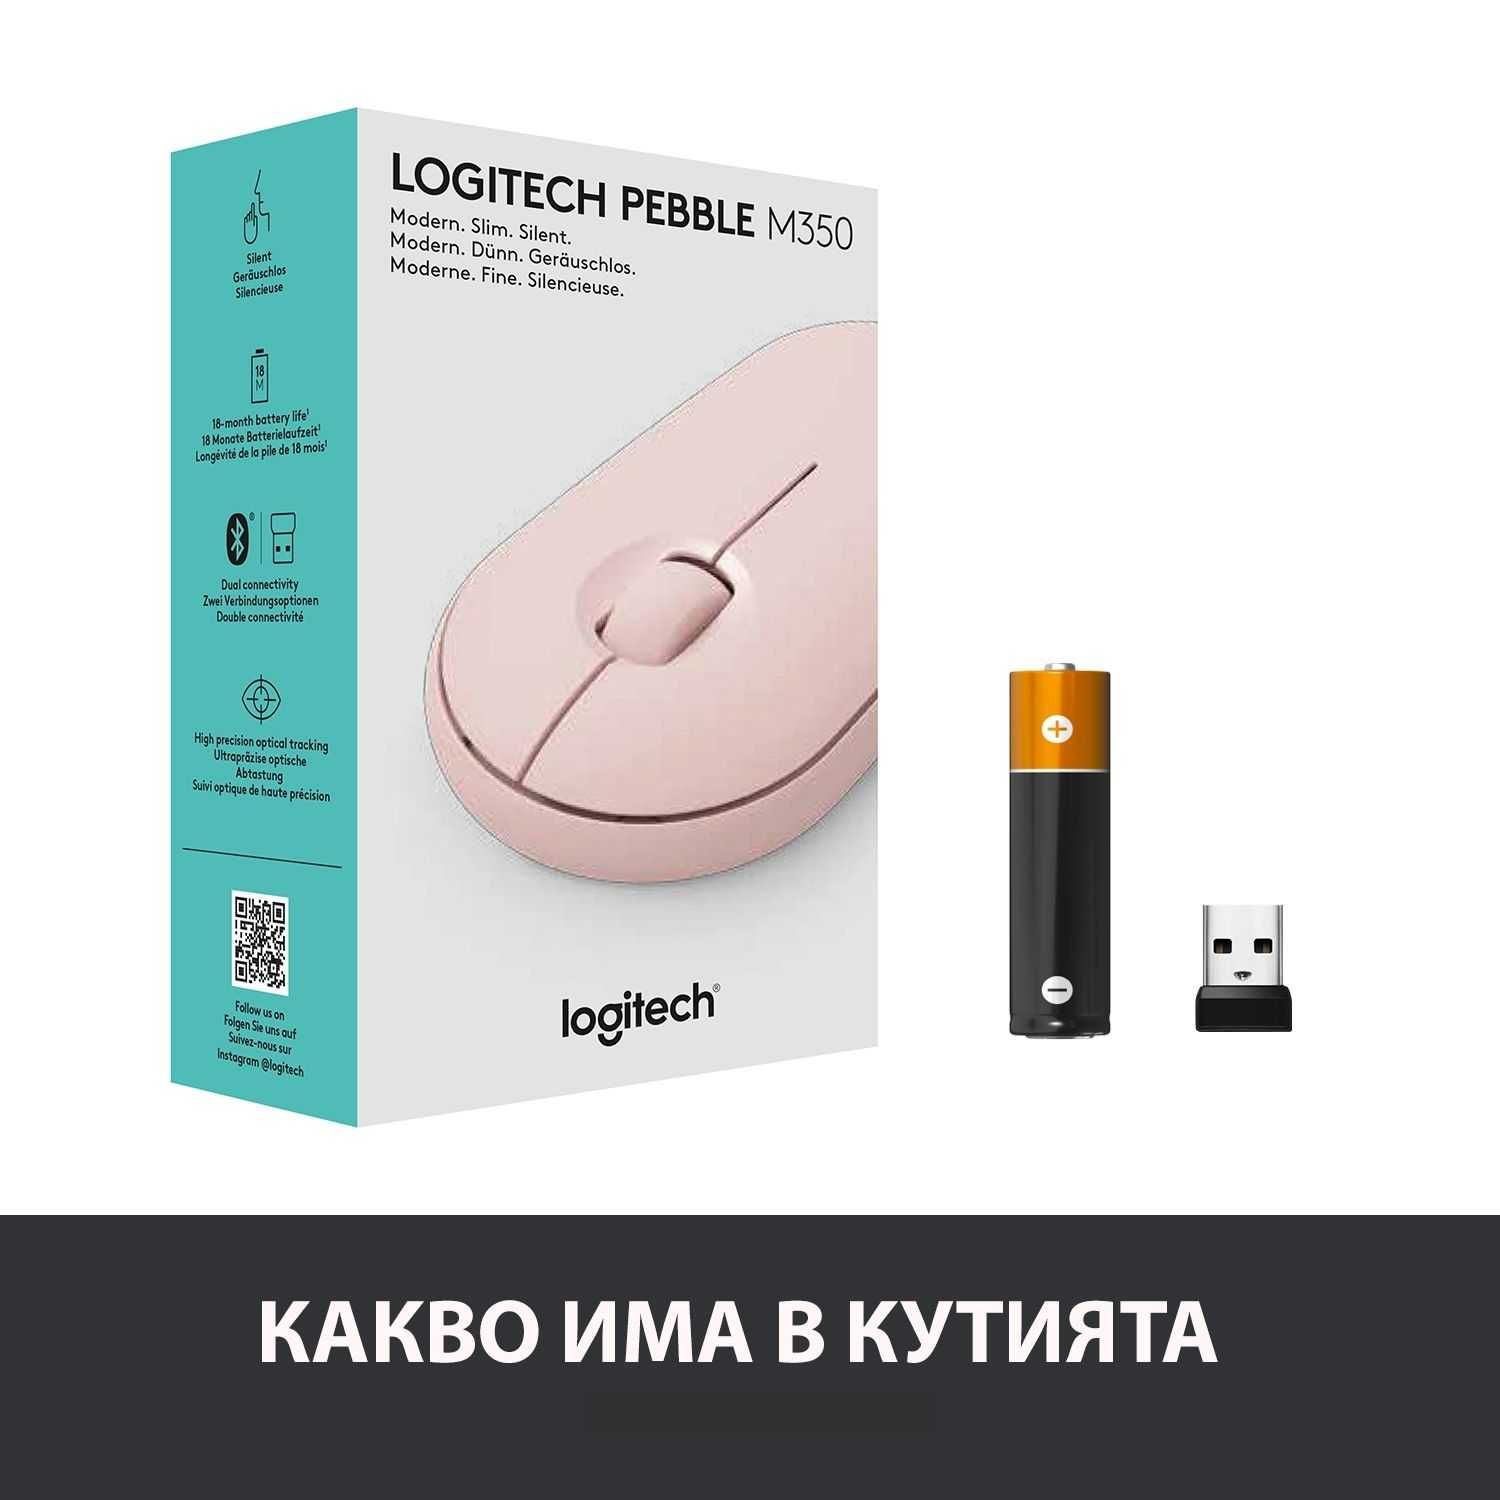 Безжична Мишка Logitech - Pebble M350, оптична, Bluetooth, розова !